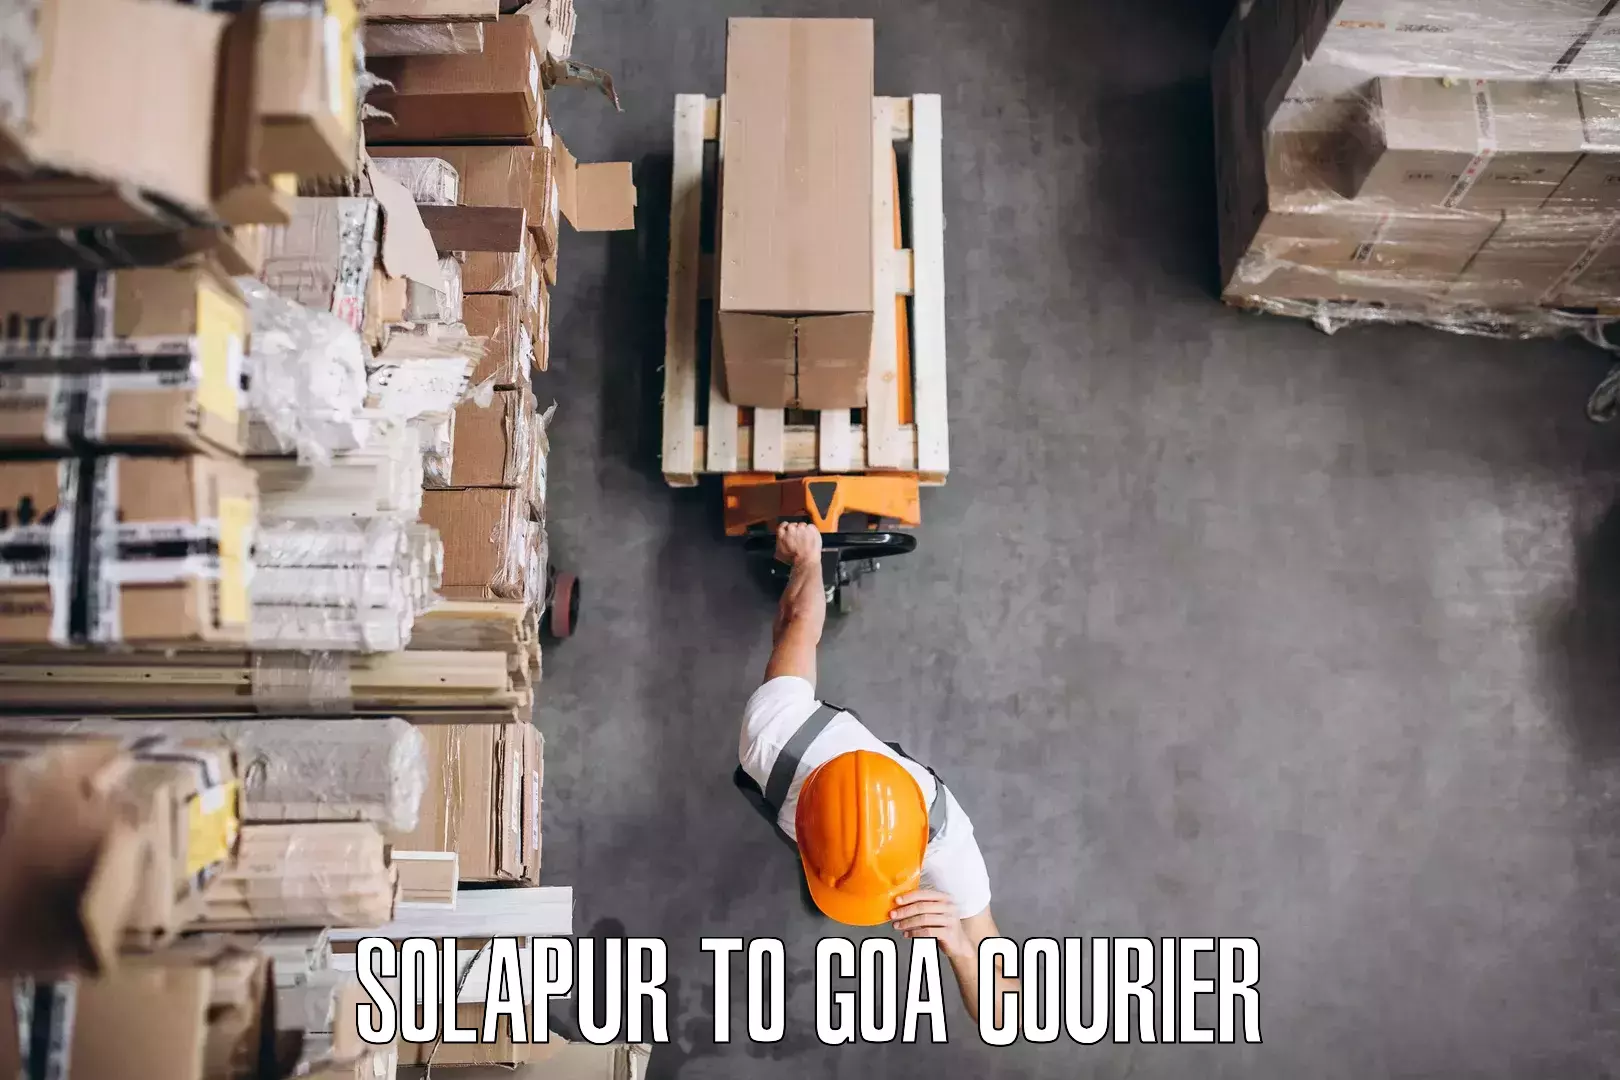 Furniture transport professionals Solapur to IIT Goa